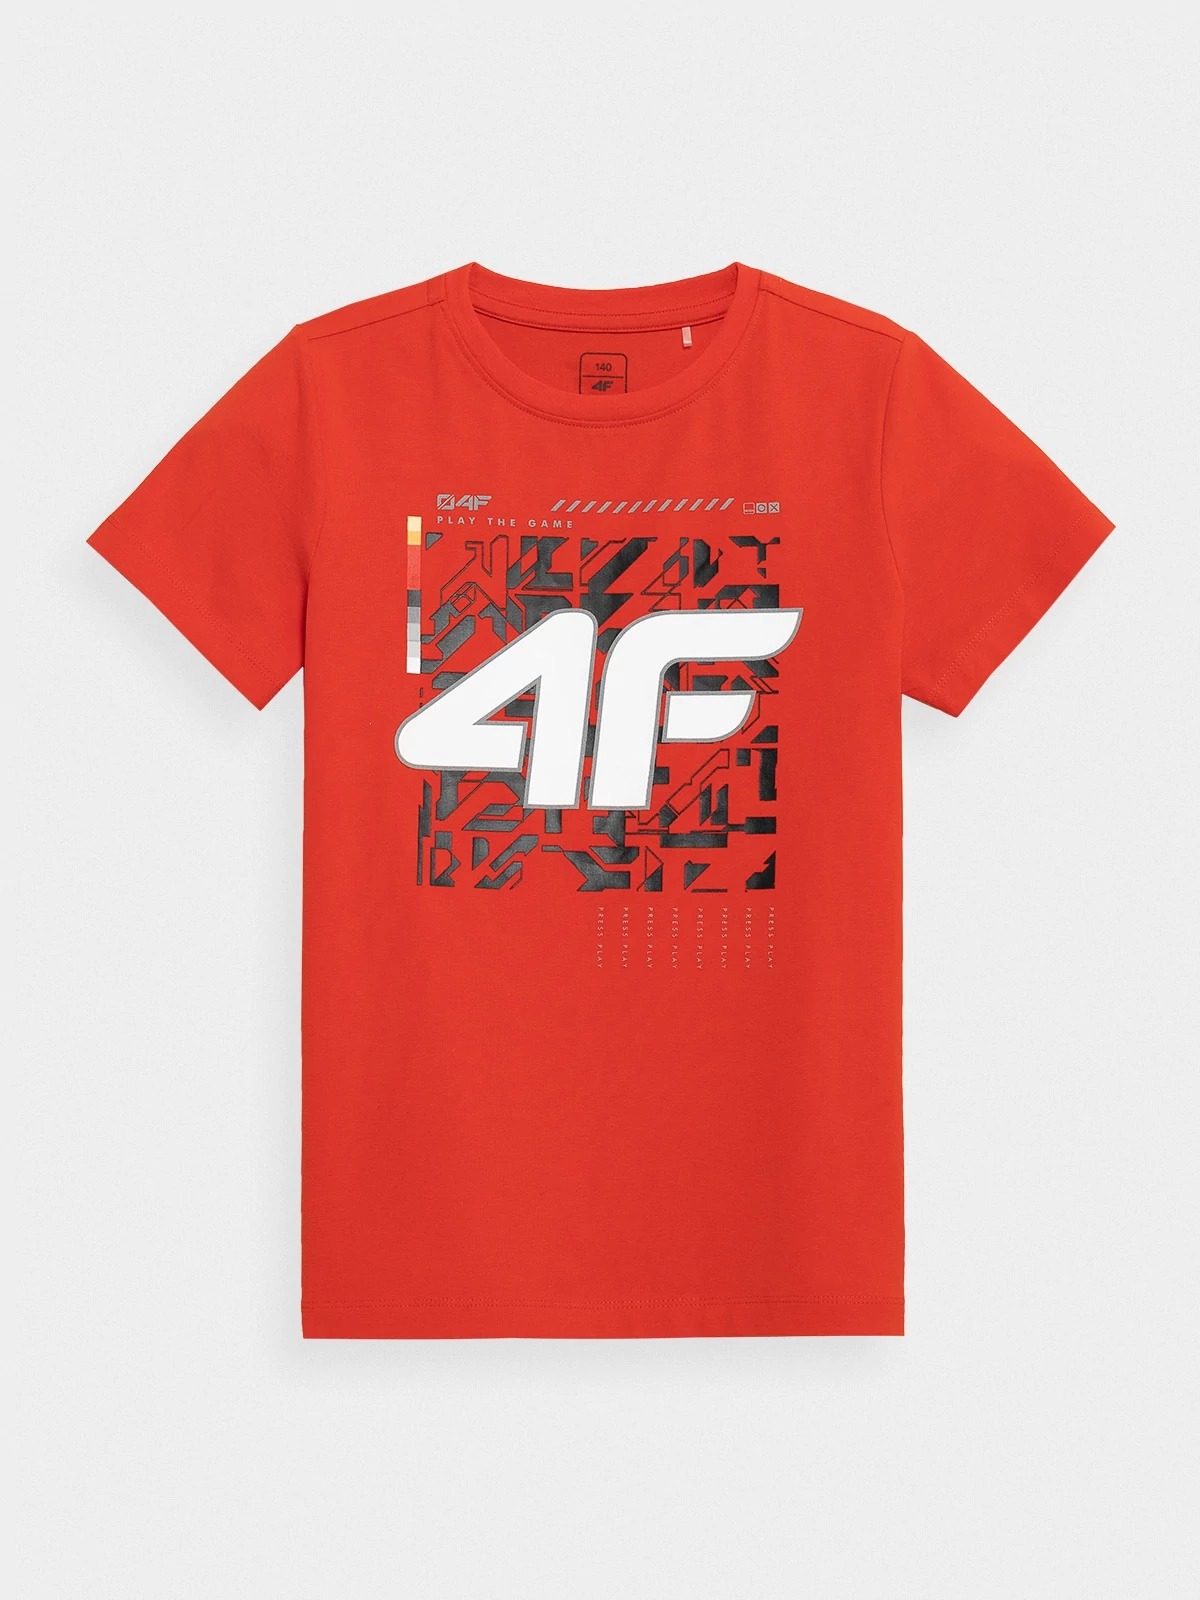 фото Футболка 4f boy's t-shirts hjz21-jtsm008b-62s цв.красный р. 128